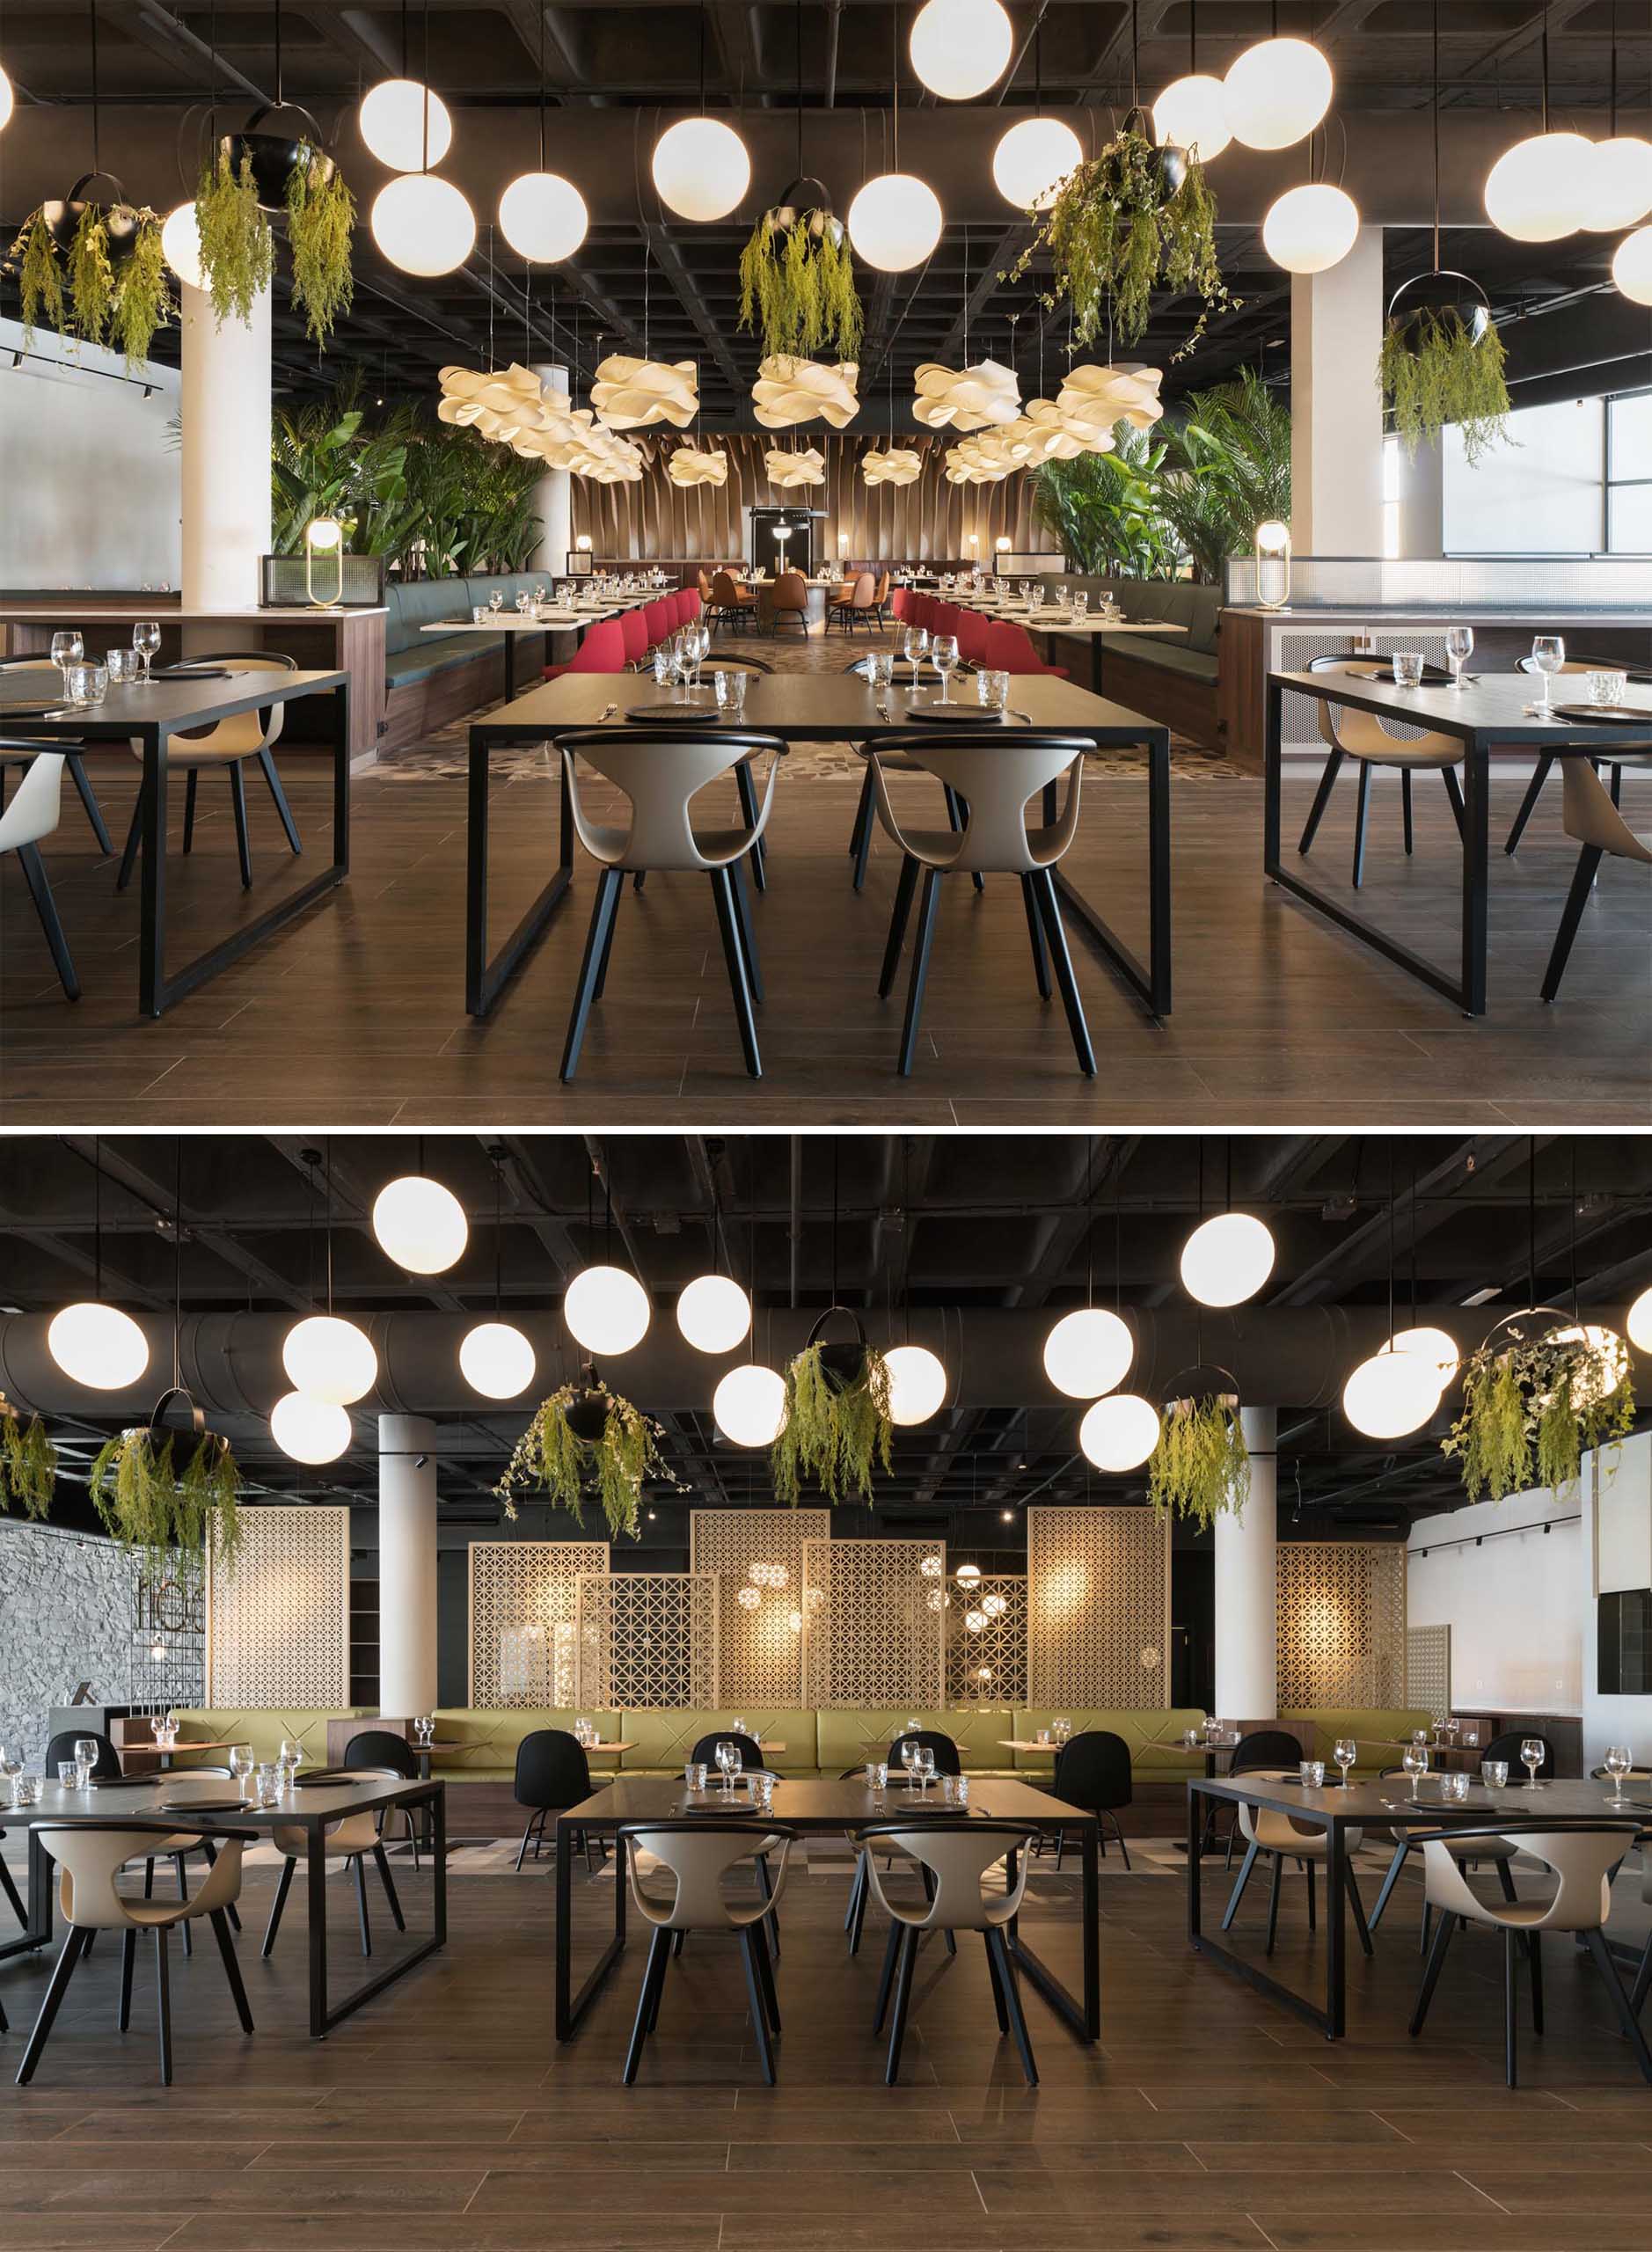 Современный ресторан с зеленью, несколькими зонами отдыха и большим количеством освещения.